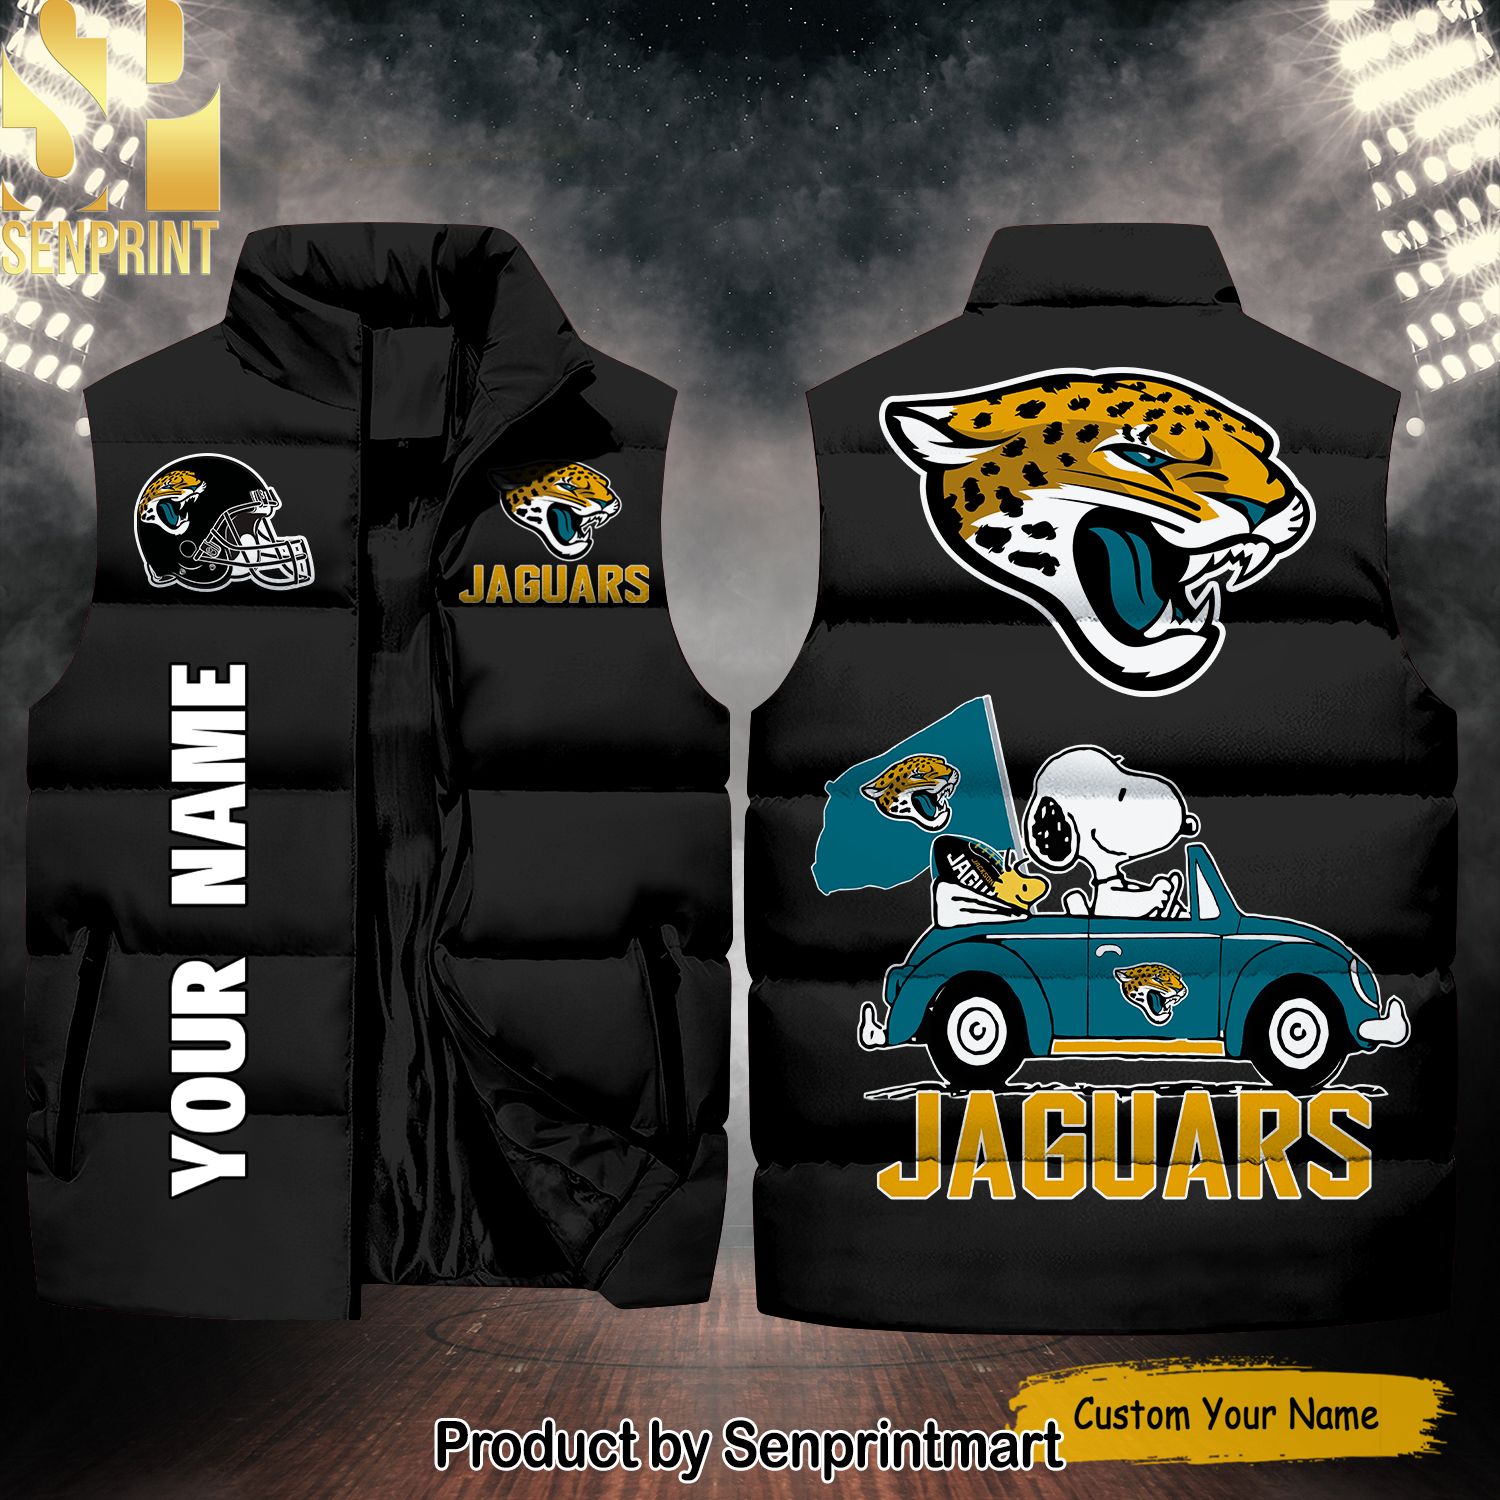 National Football League Jacksonville Jaguars Peanuts Snoopy Hypebeast Fashion Sleeveless Jacket